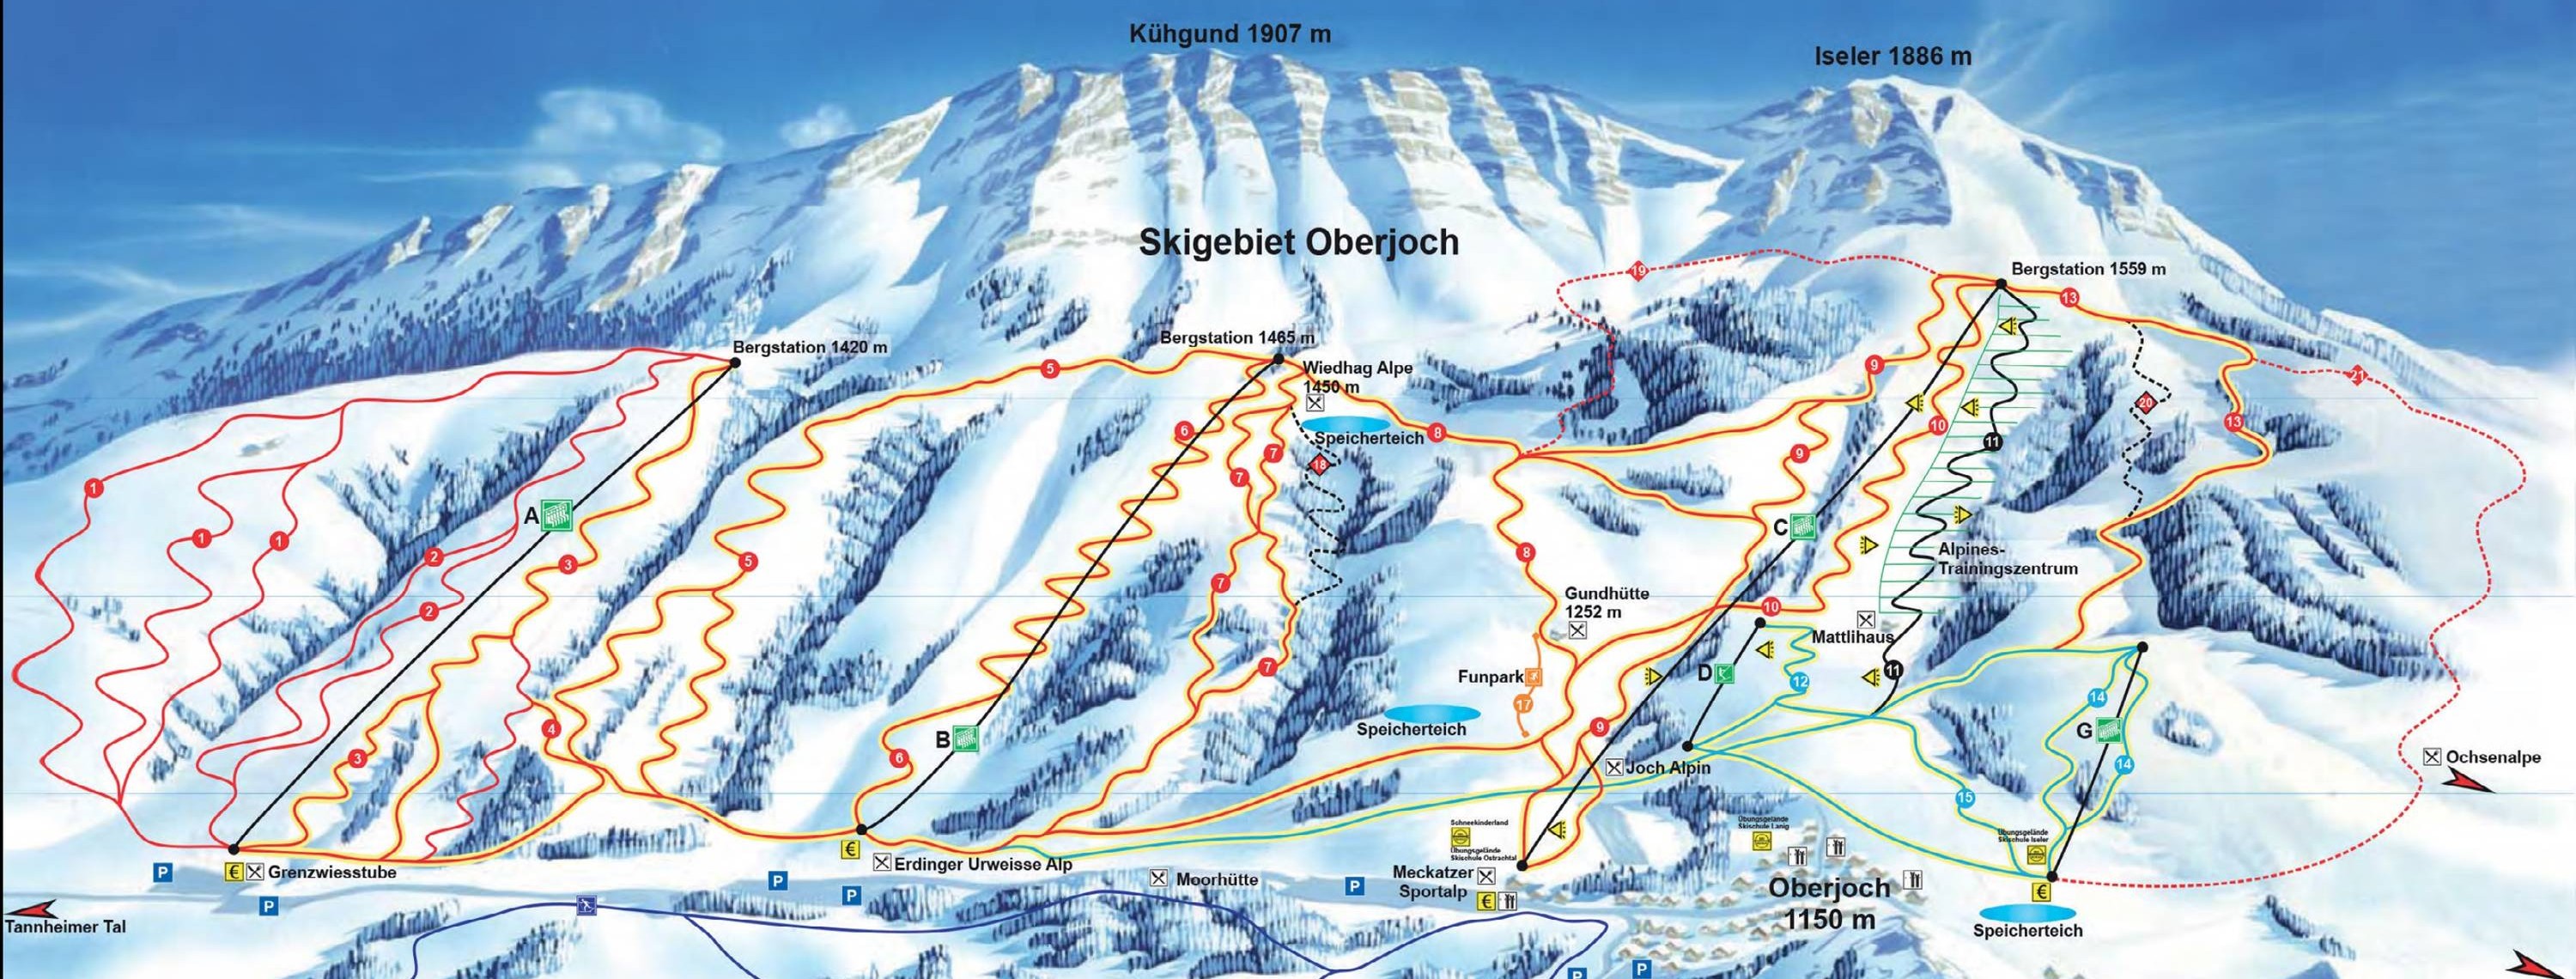 Oberjoch slopes